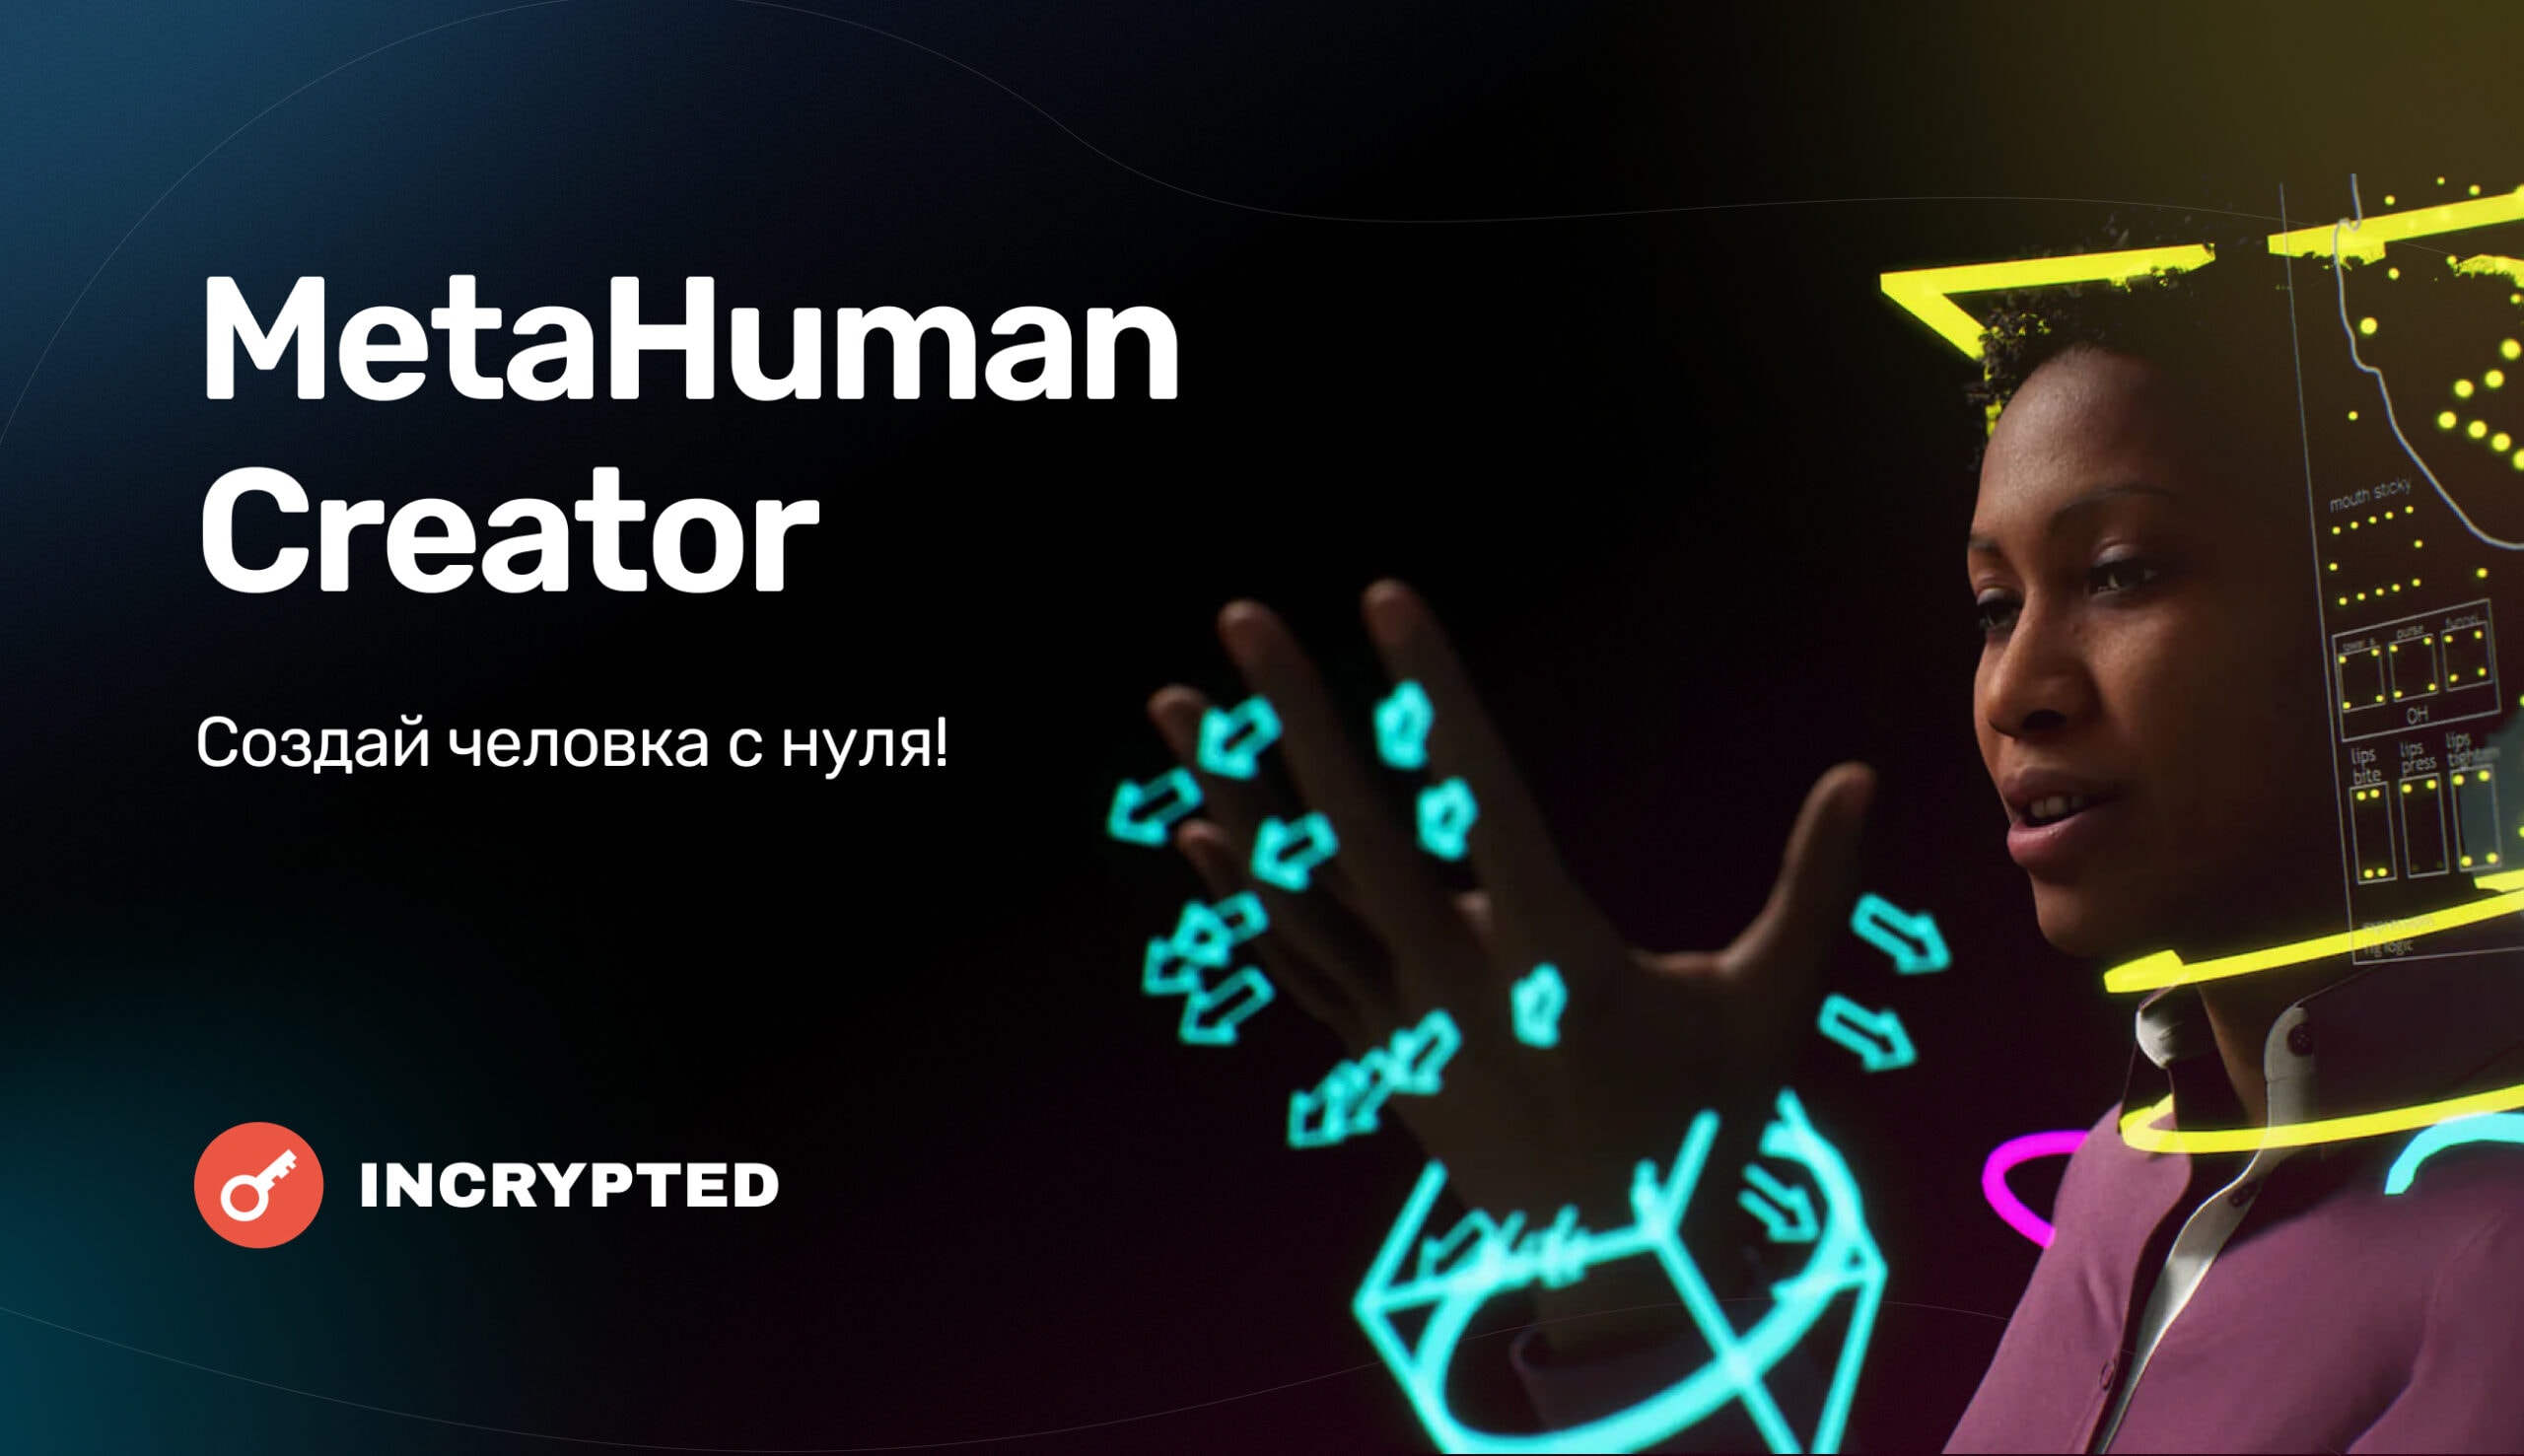 Сотворить человека за 50 минут? Легко с Metahuman Creator от Epic Games.